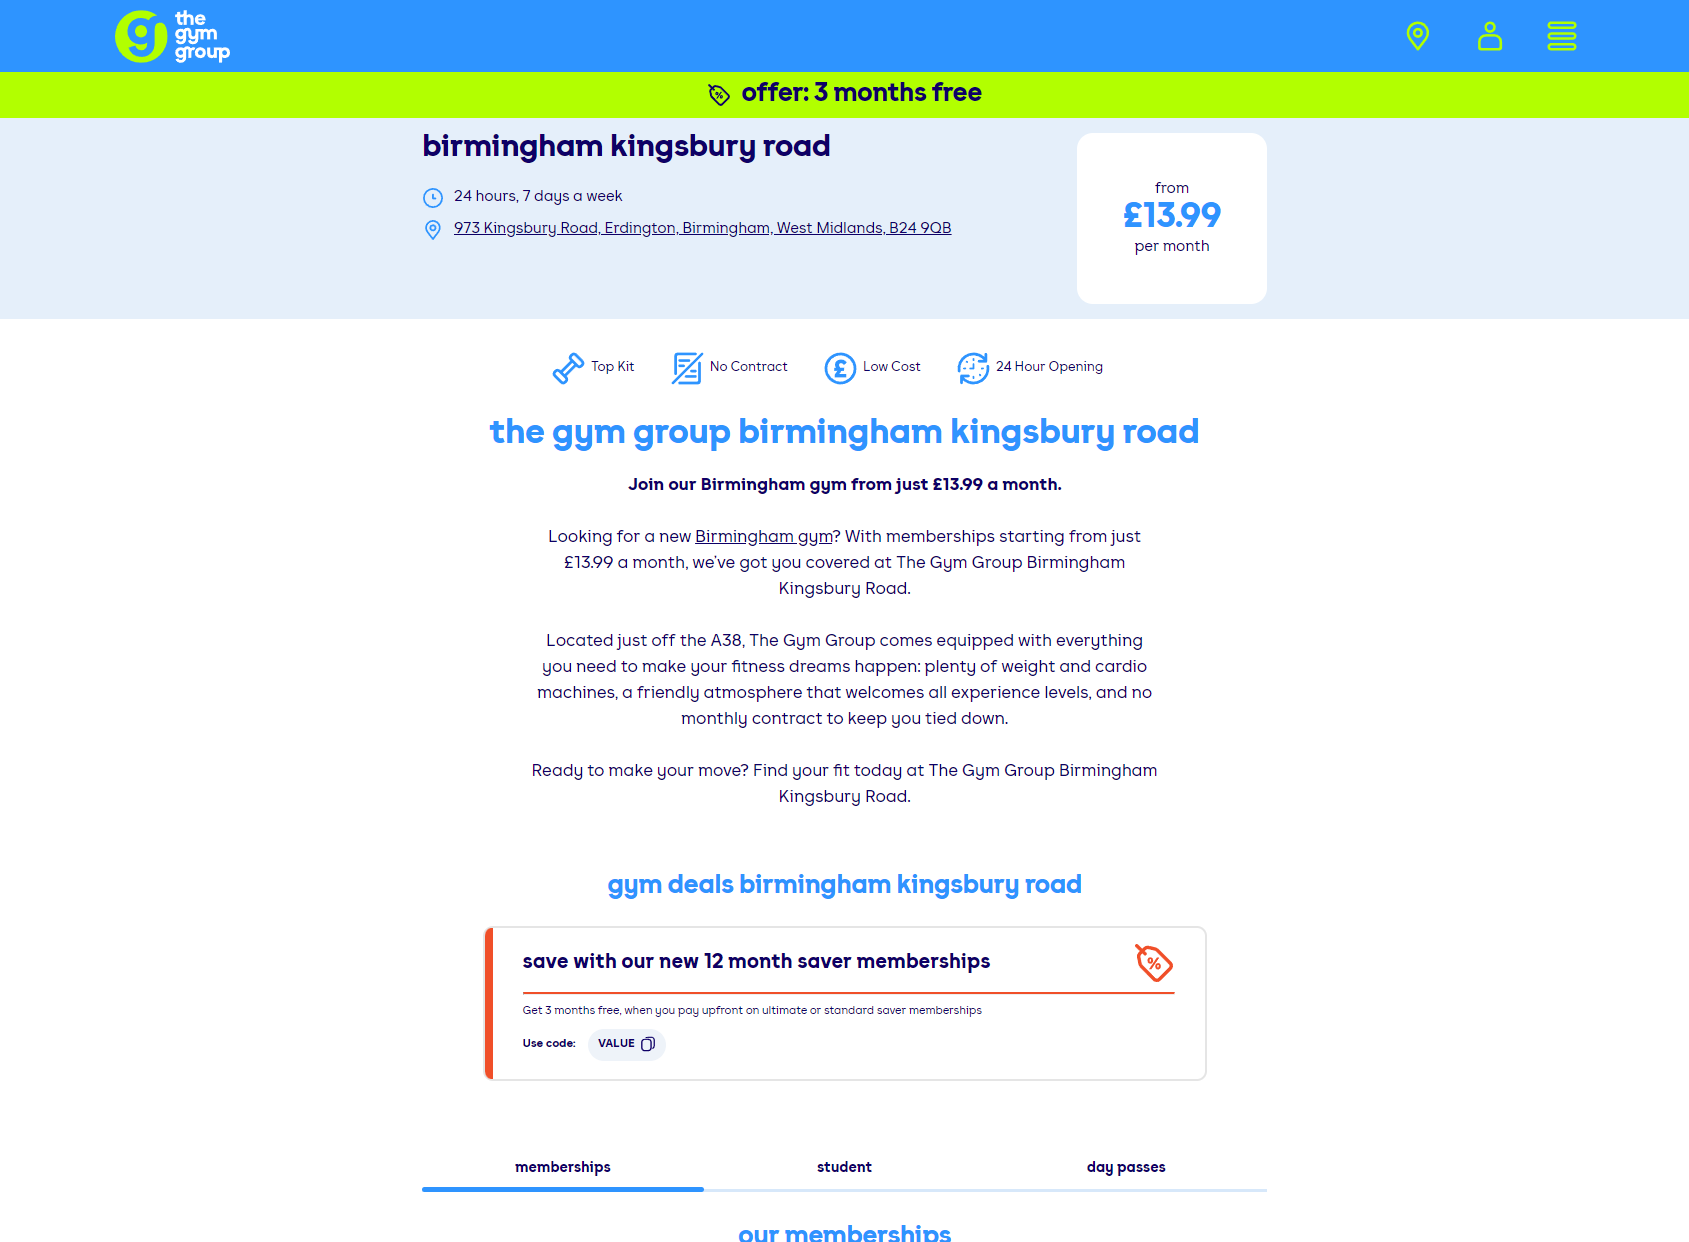 The Gym Group Birmingham Kingsbury Road